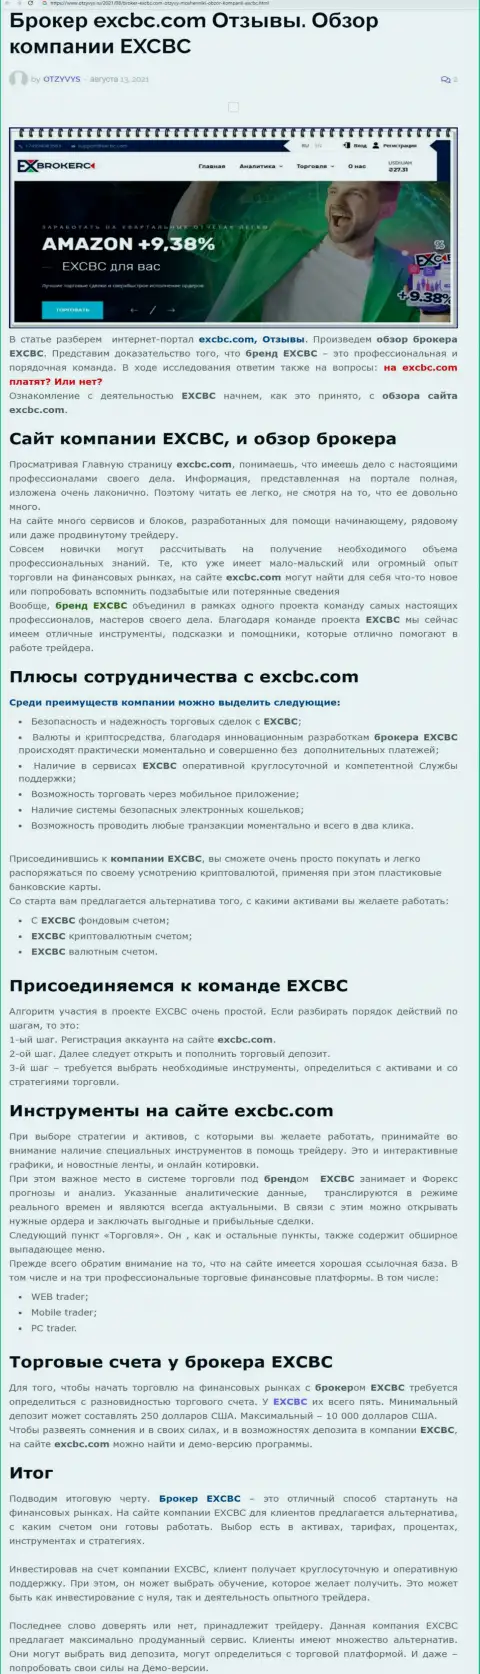 Информационный материал о форекс организации ЕХКБК Ком на сайте Otzyvys Ru